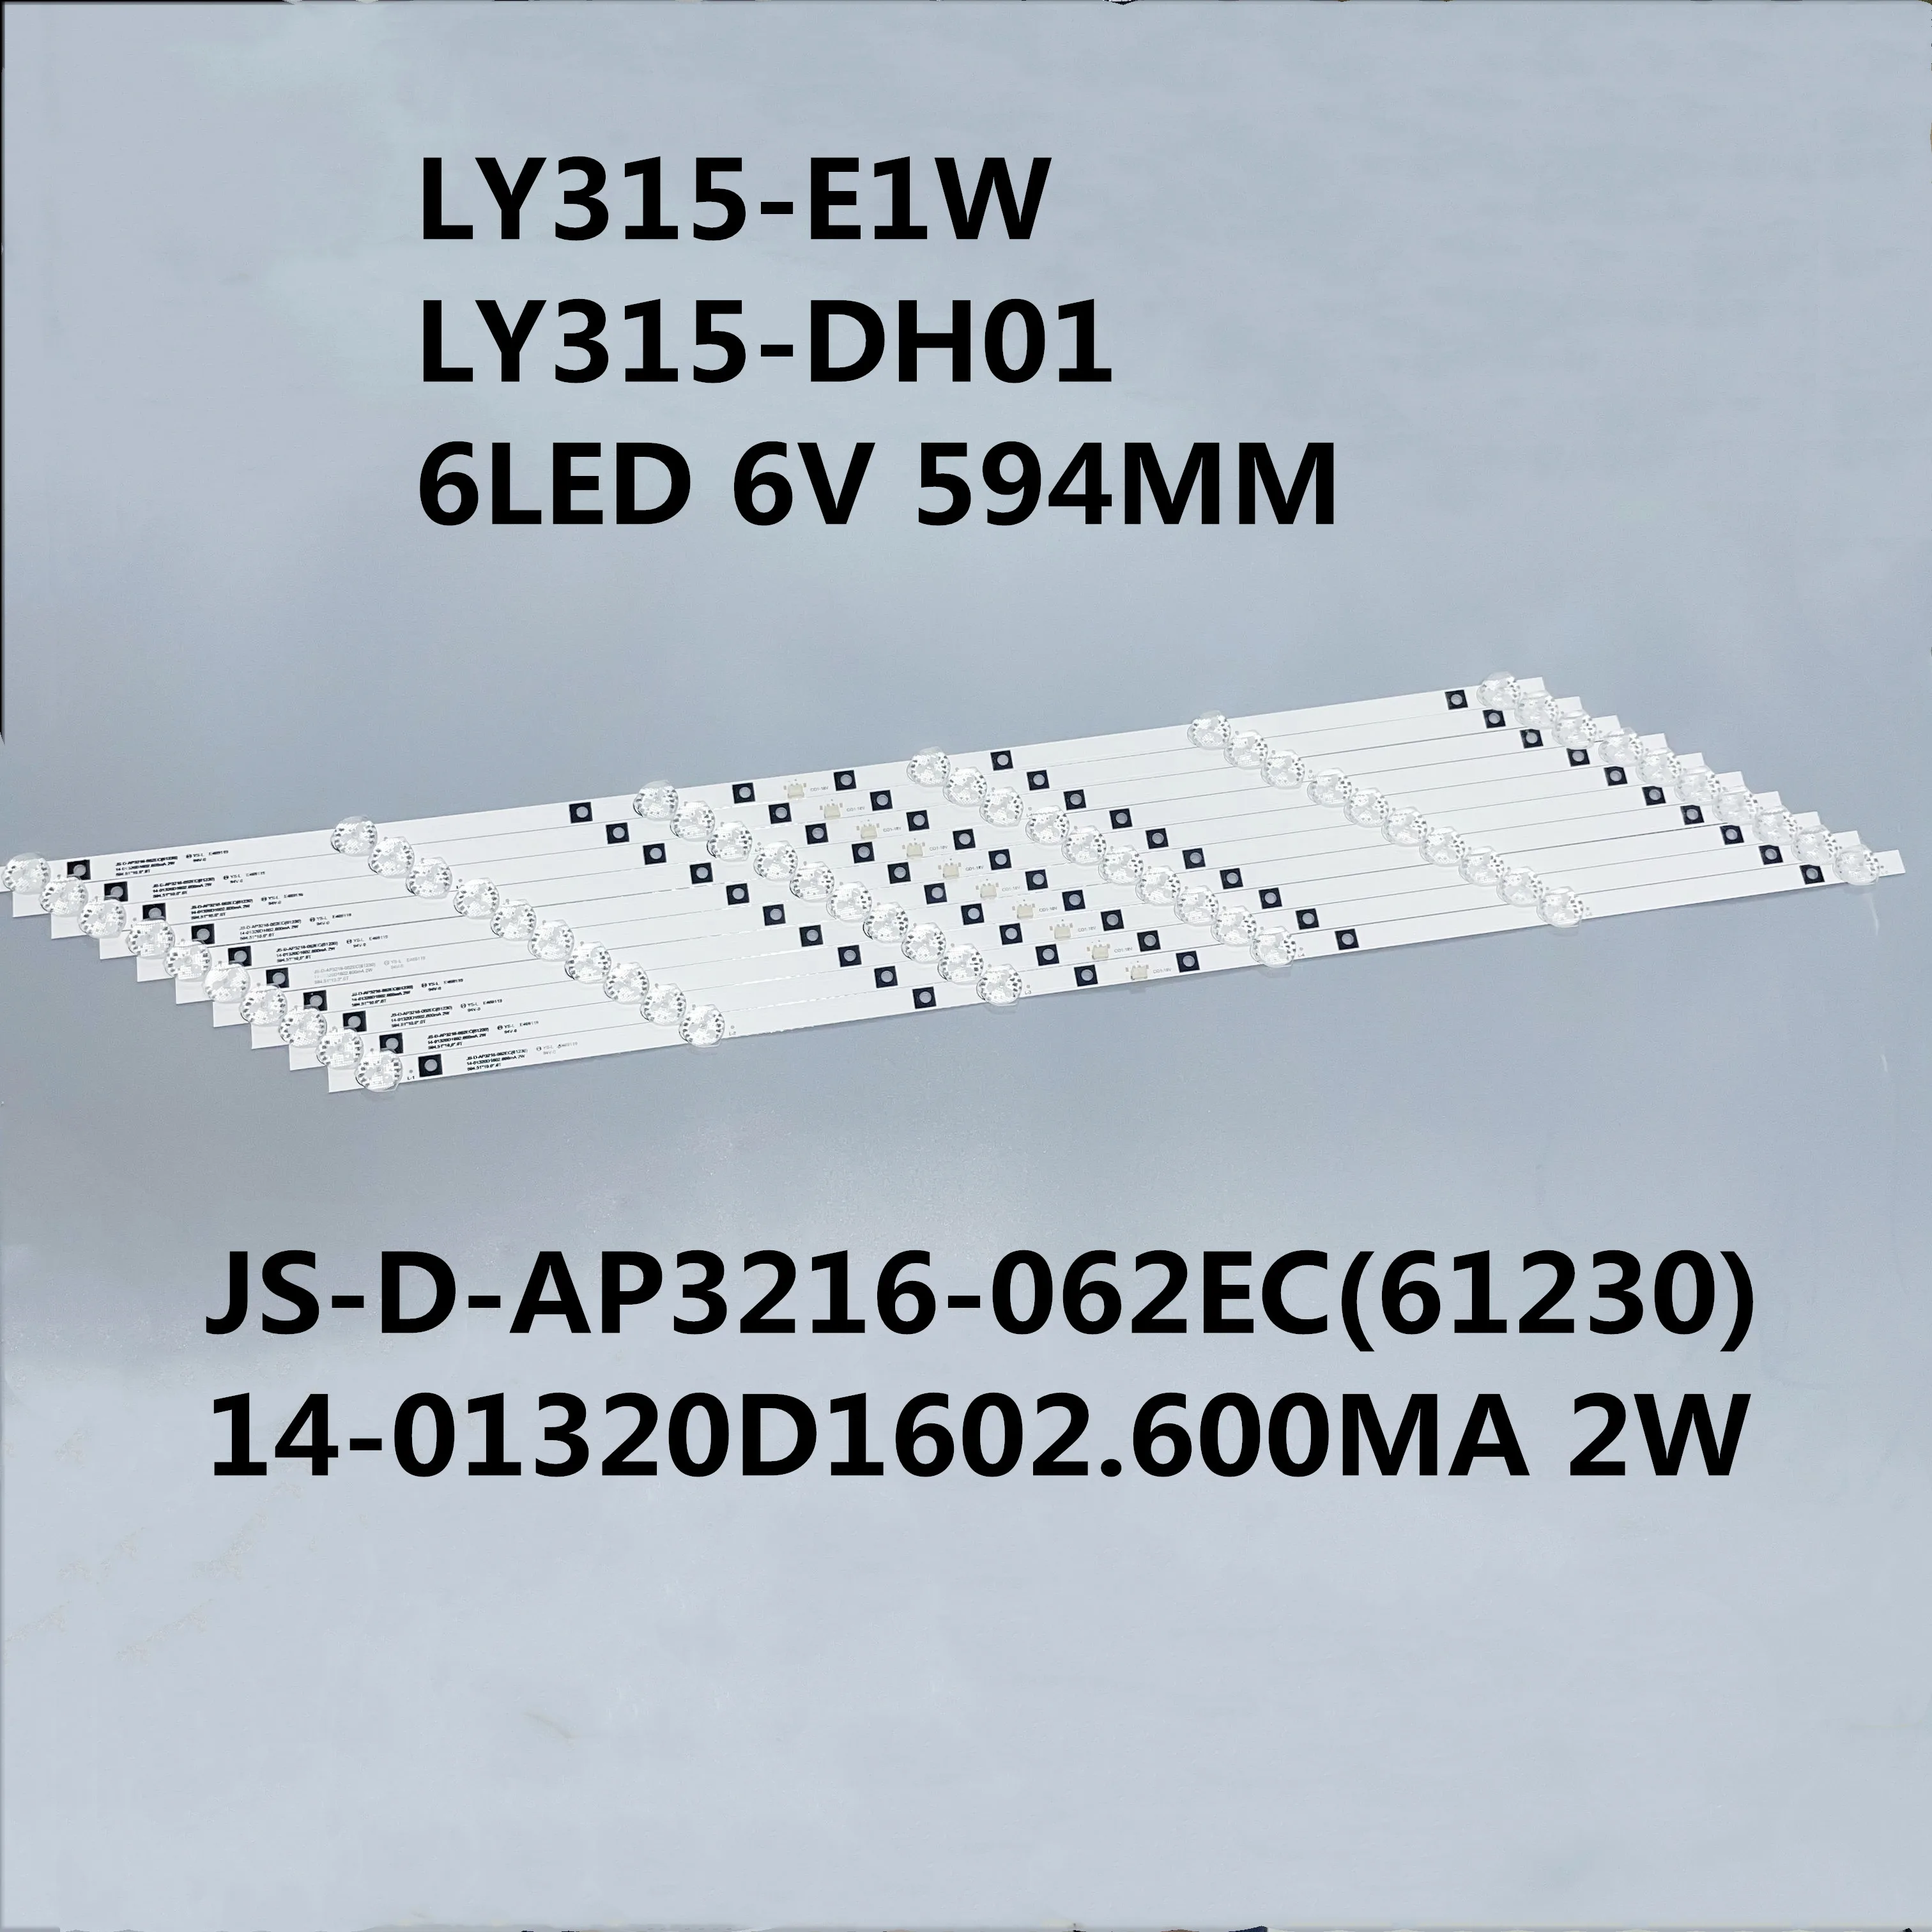 

10PCS/LOT LED STRIP HL-24320A28-0701S-02 A0 LY315-E1W LY315-DH01 6LED 6V 594MM JS-D-AP3216-062EC(61230) 14-01320D1602.600MA 2W